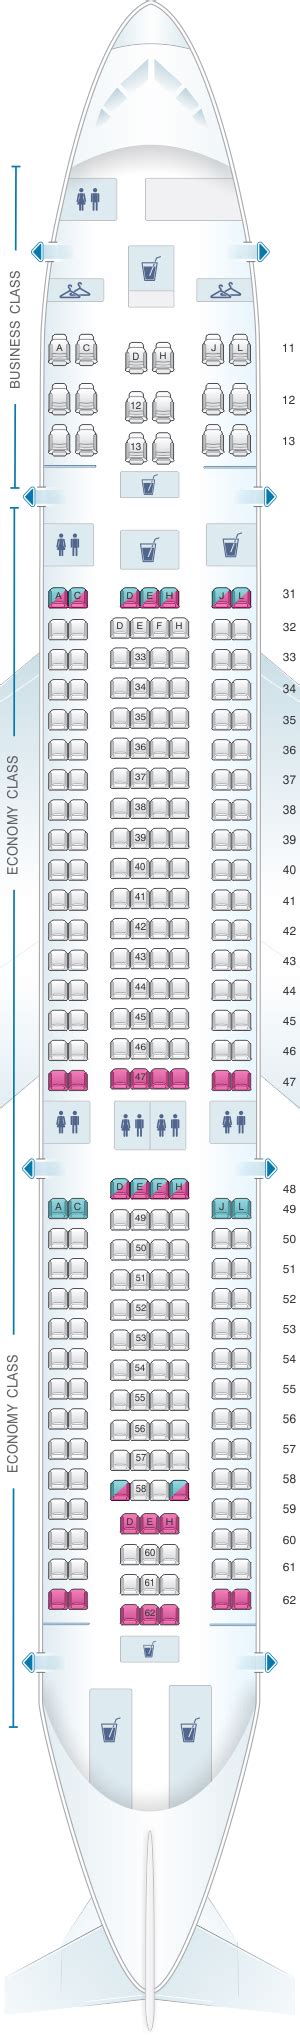 Korean Air A330 Seat Map